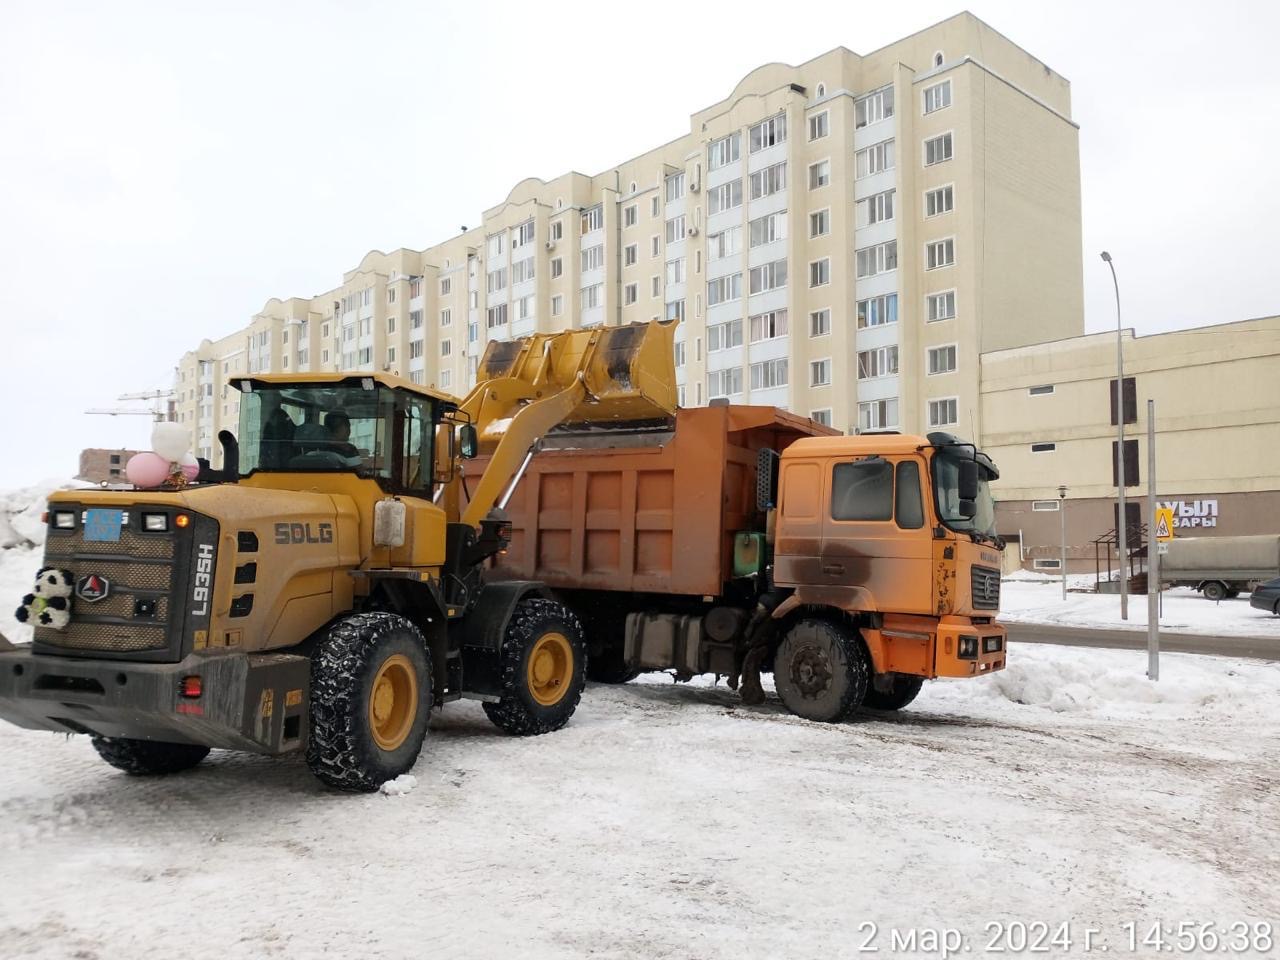 Астанада түнгі ауысымға қар тазалауға 800-ге жуық арнайы техника жұмылдырылды